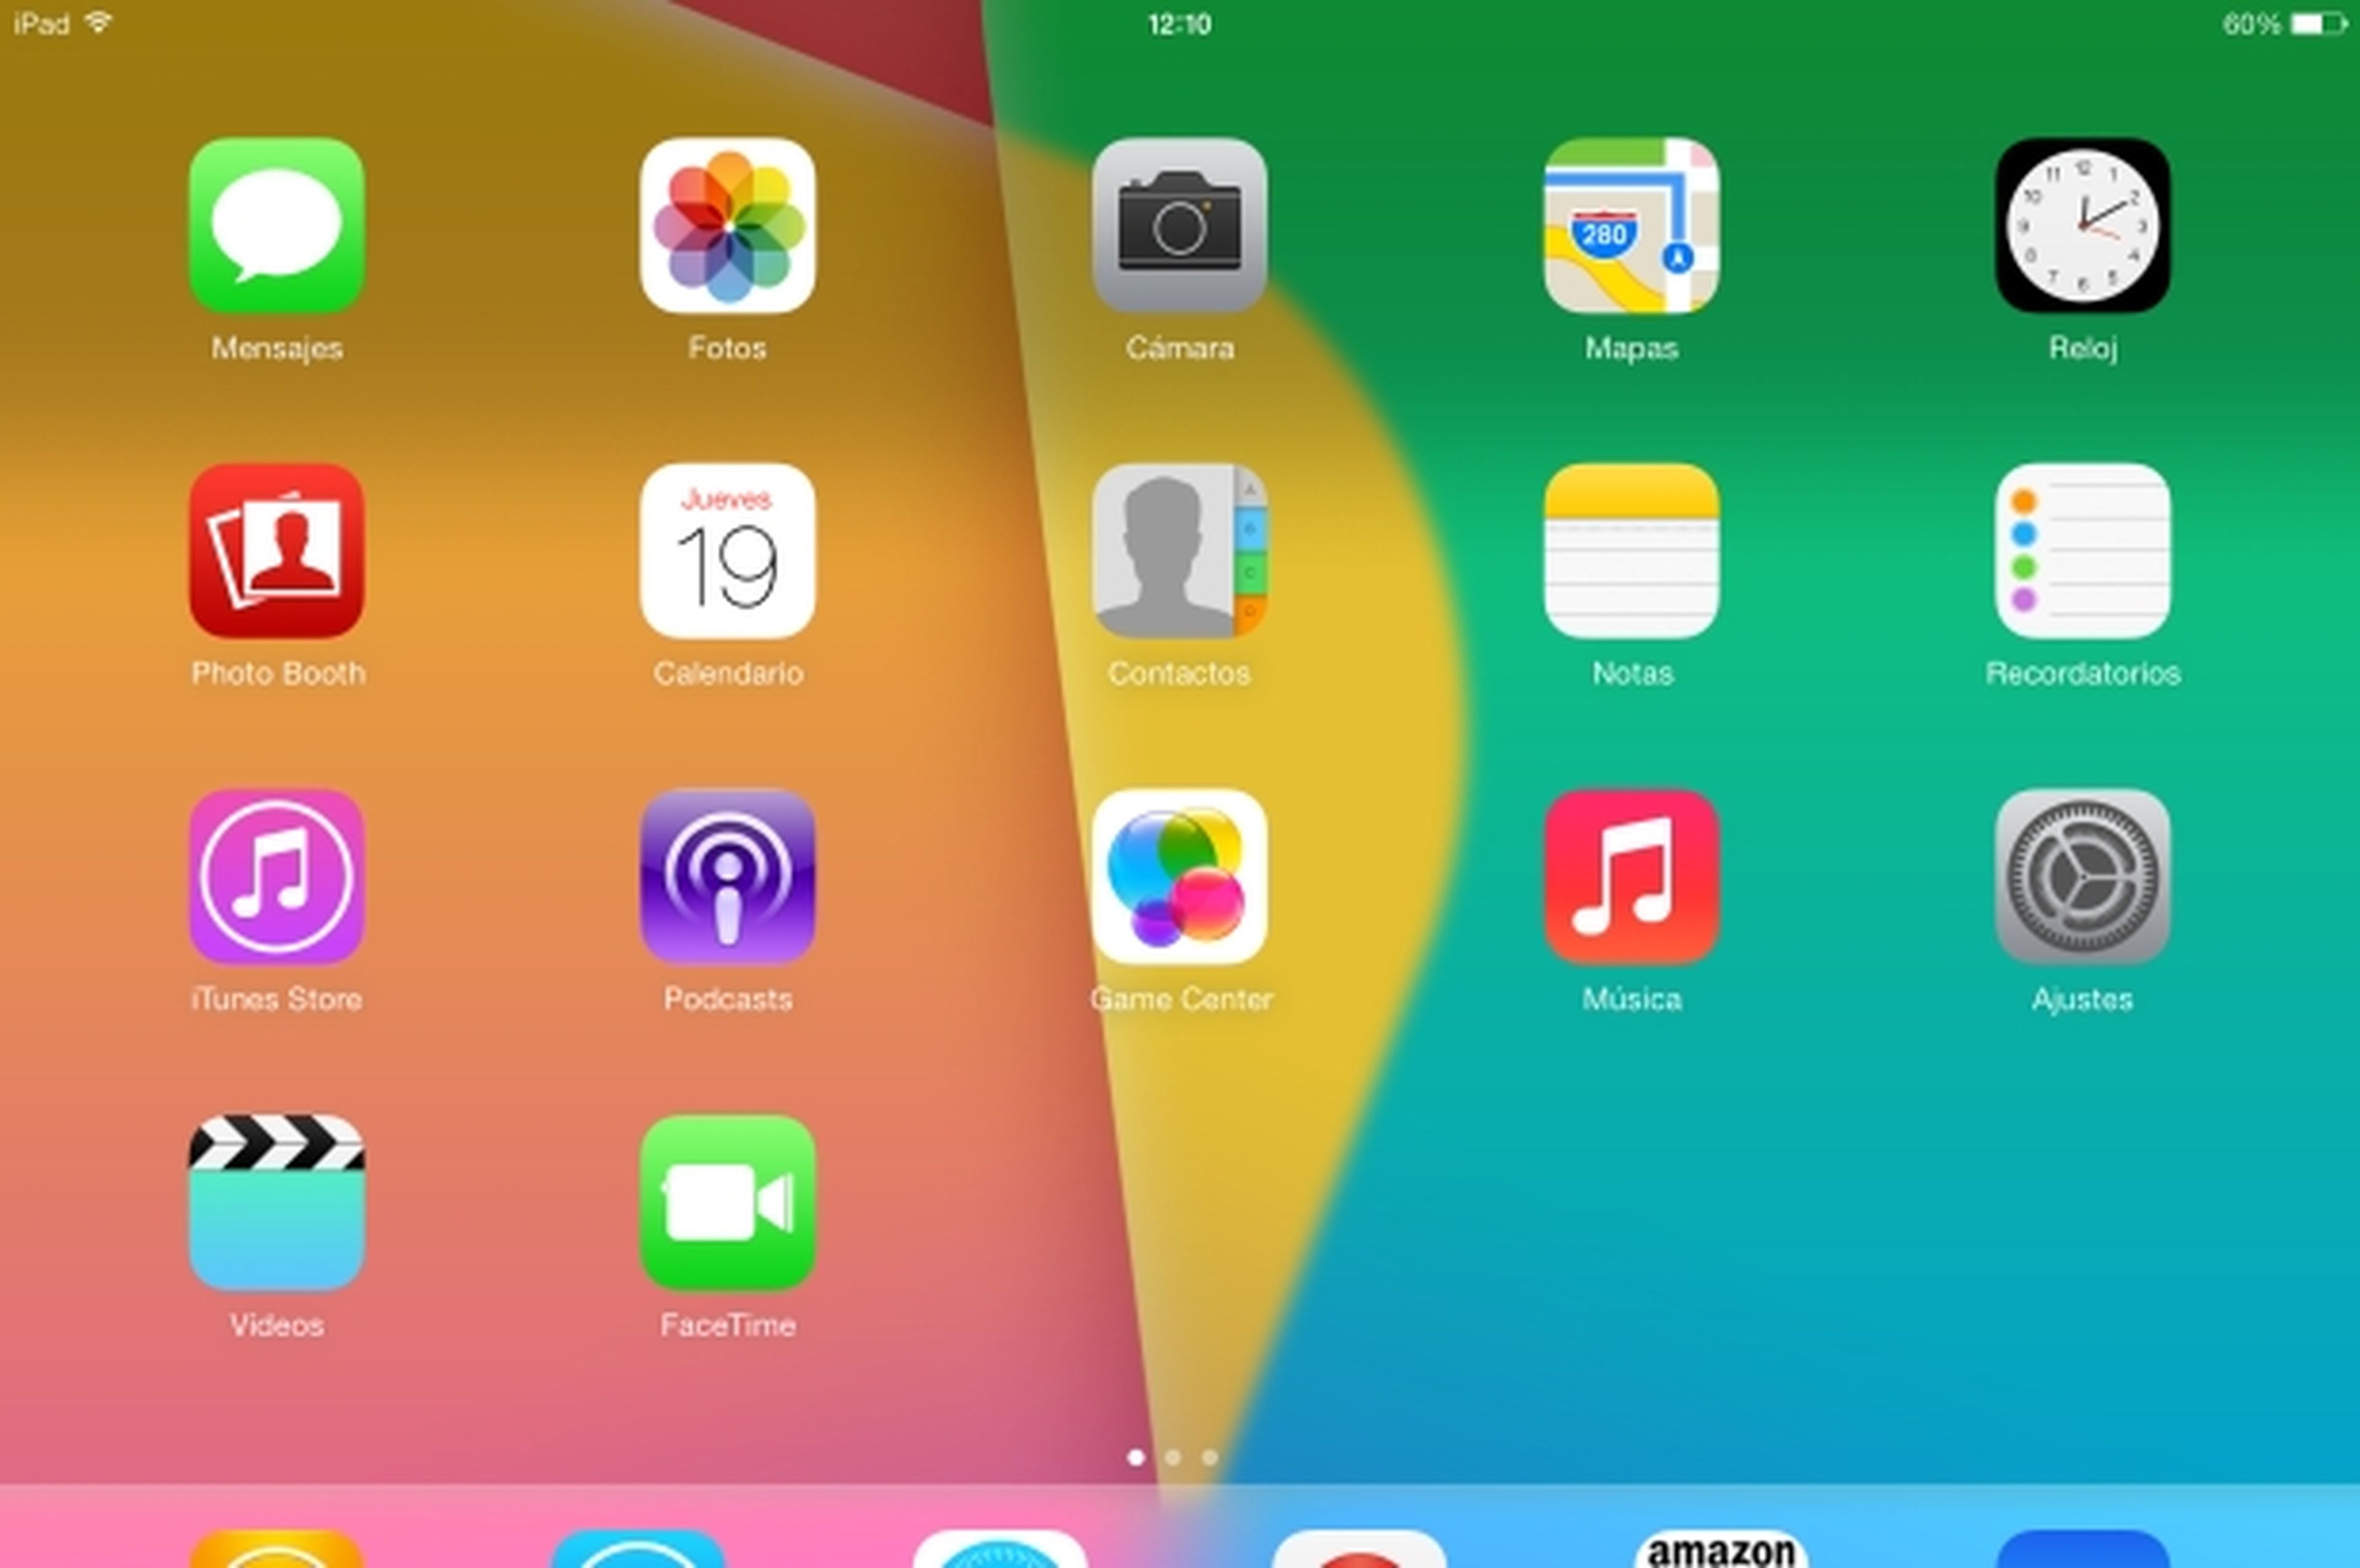 Todos los cambios y novedades oficiales de iOS 7 en el iPad